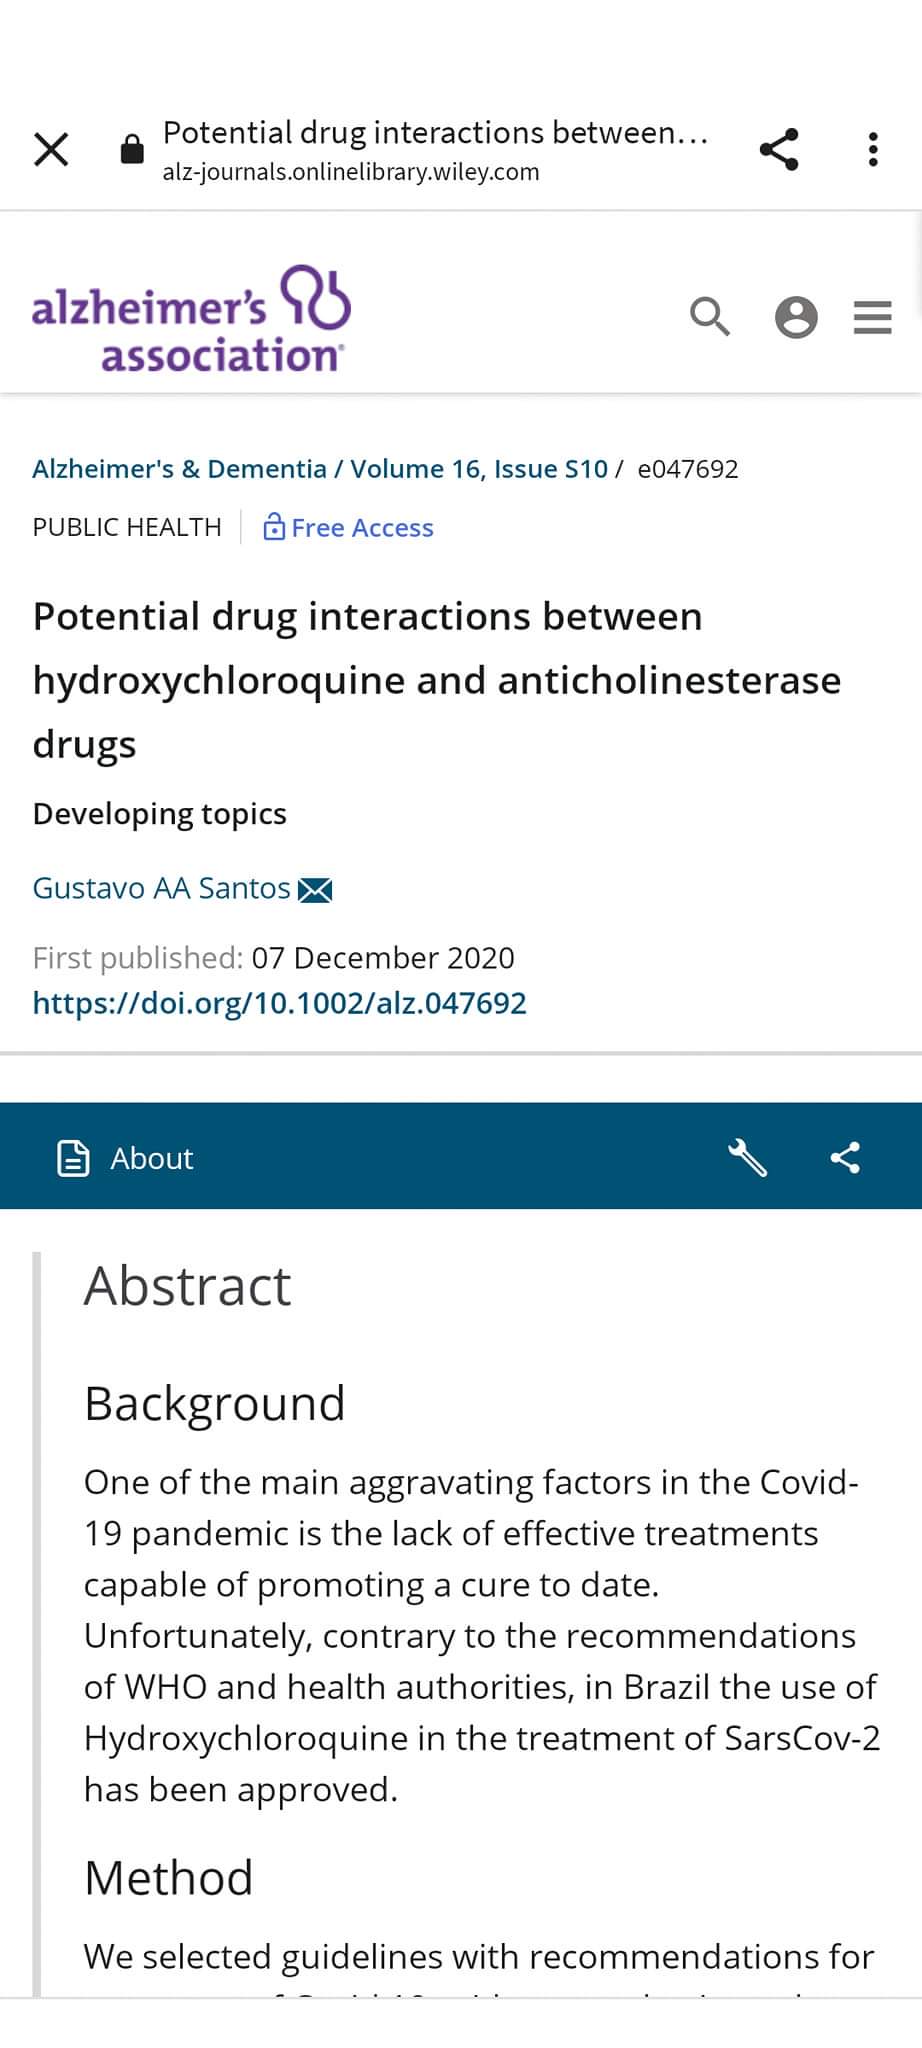 O Artigo Científico “Potential drug interactions between hydroxychloroquine and anticholinesterase drugs” do Dr. Gustavo Alves foi publicado  na mais importante revista científica de Alzheimer.